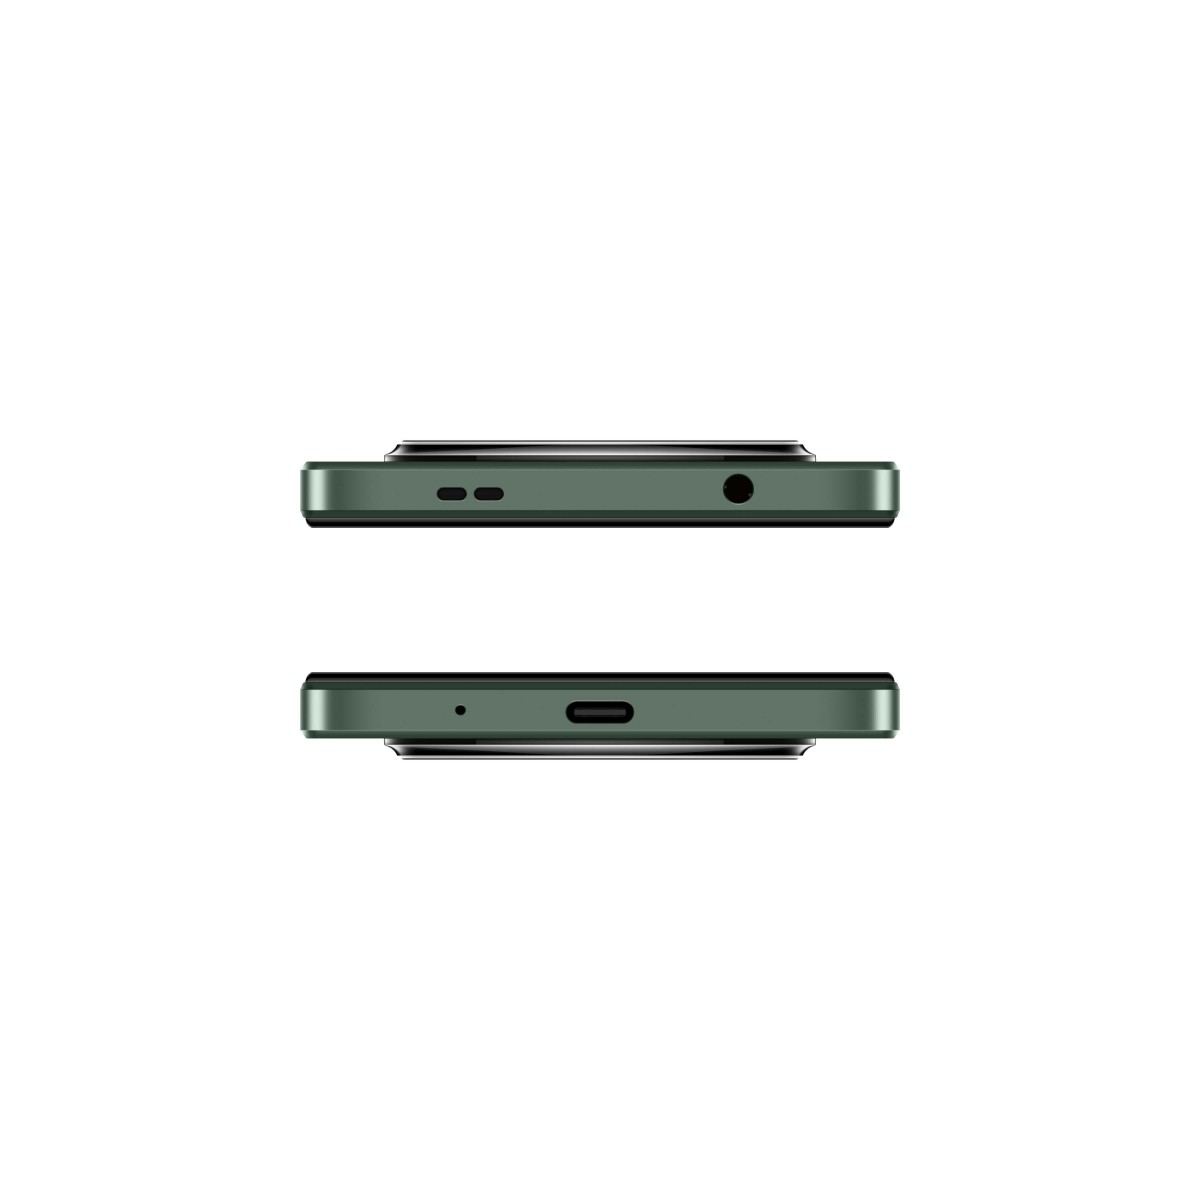 جوال شاومي ريدمي A3 ثنائي الشريحة ذاكرة 128 جيجا مع رام 4 جيجا 4G - لون أخضر